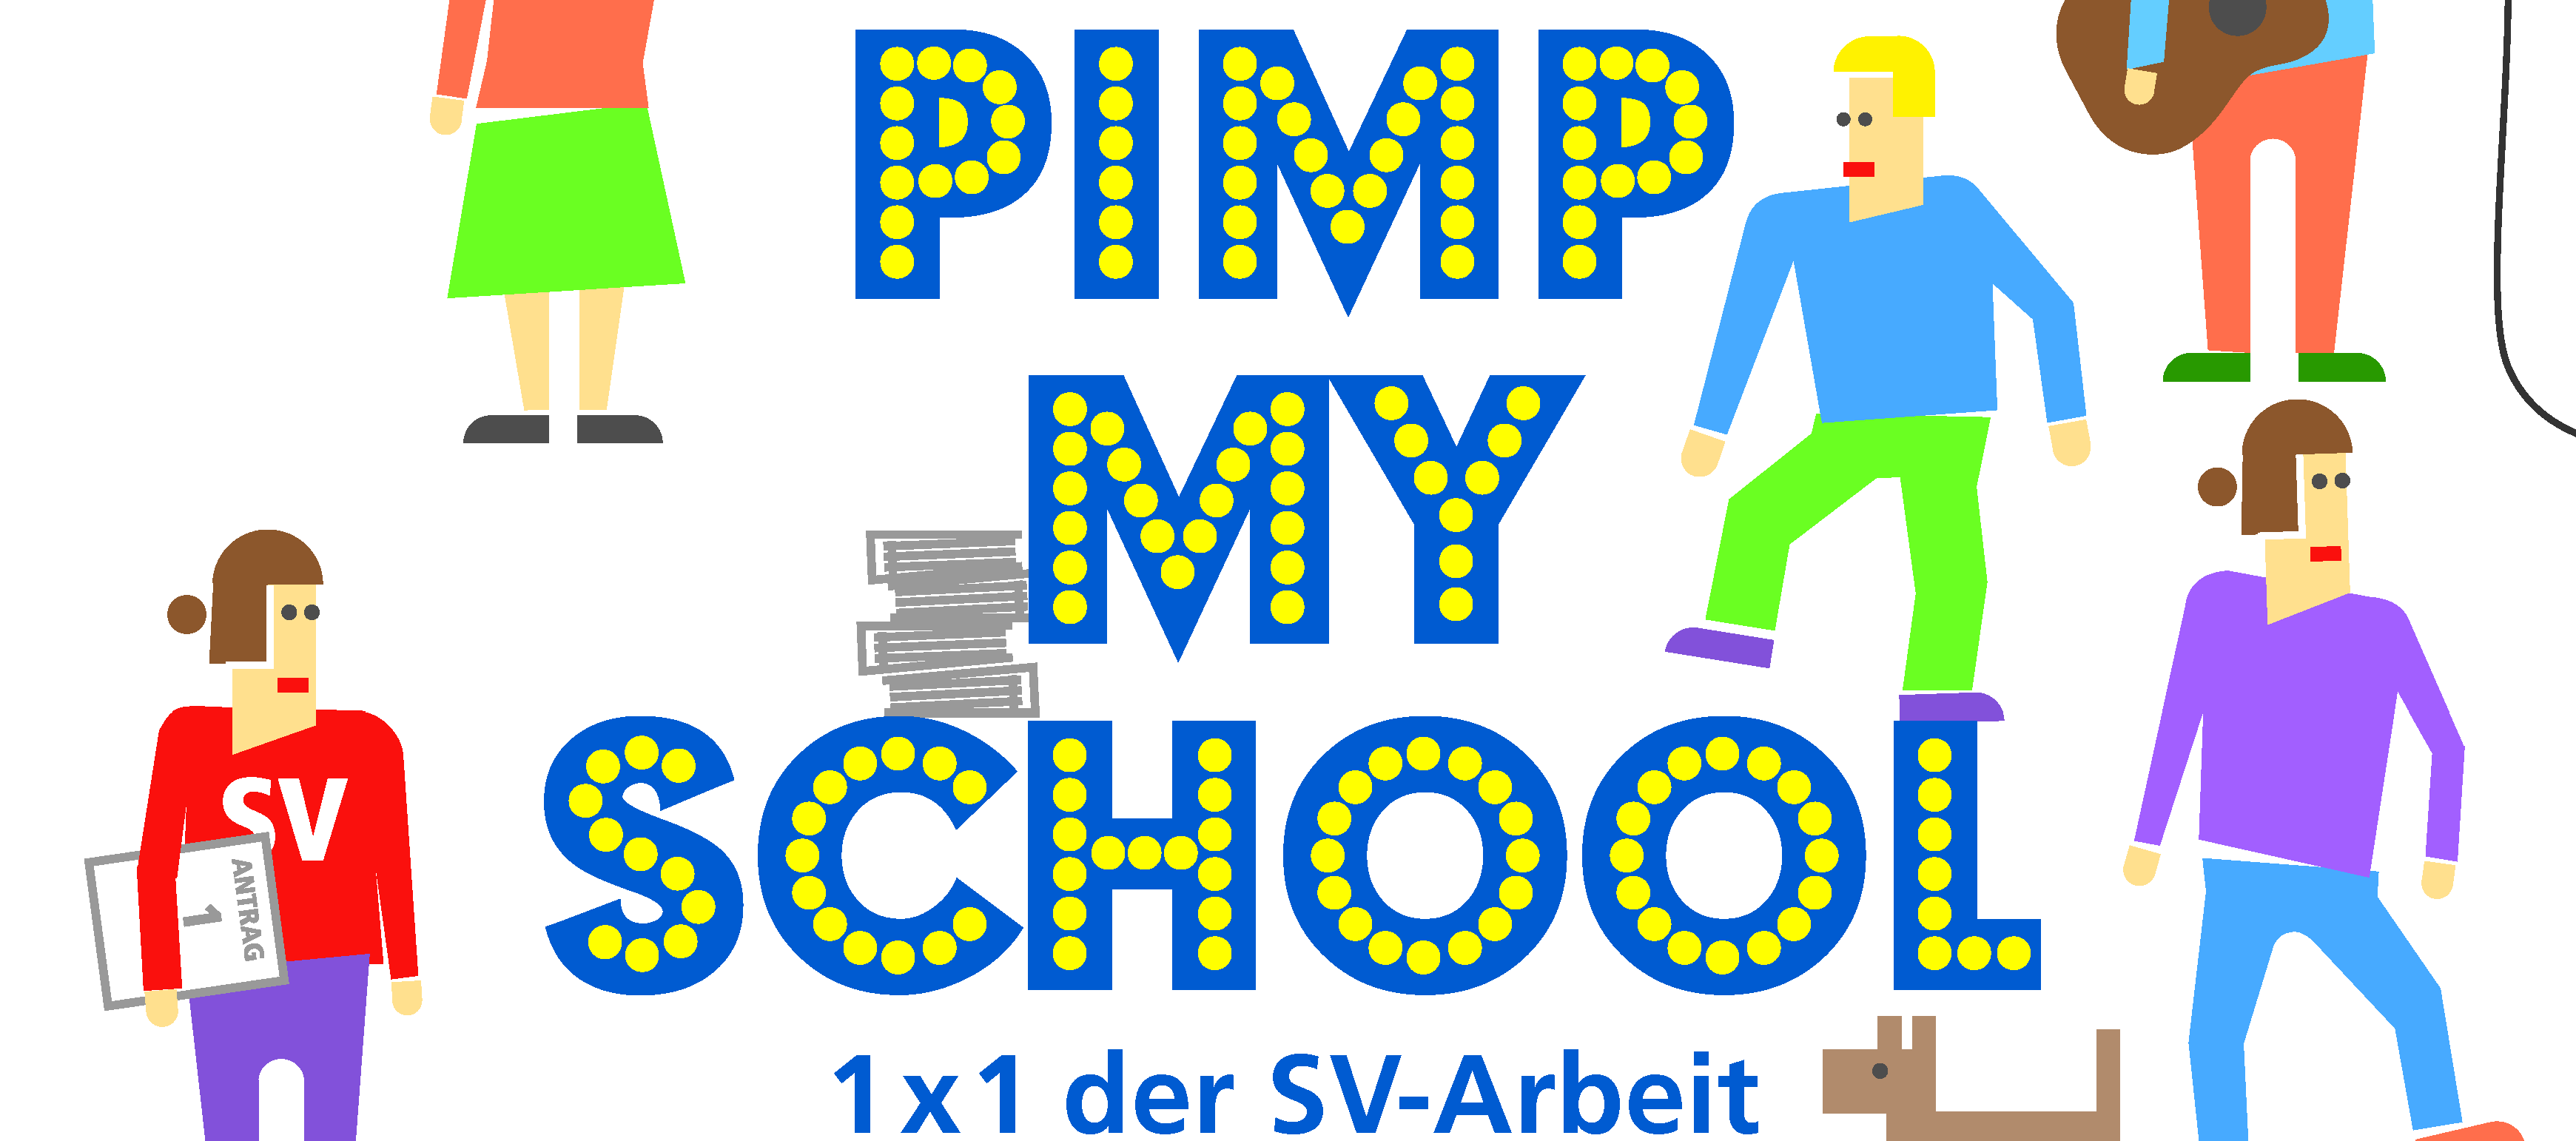 Die Grafik zeigt komikhaft einige Personen, von denen eine Gitarre spielt und eine einen Antrag unterm Arm hat. In blauer Schrift mit gelben Punkten steht dort "Pimp my School - 1x1 der SV Arbeit"."